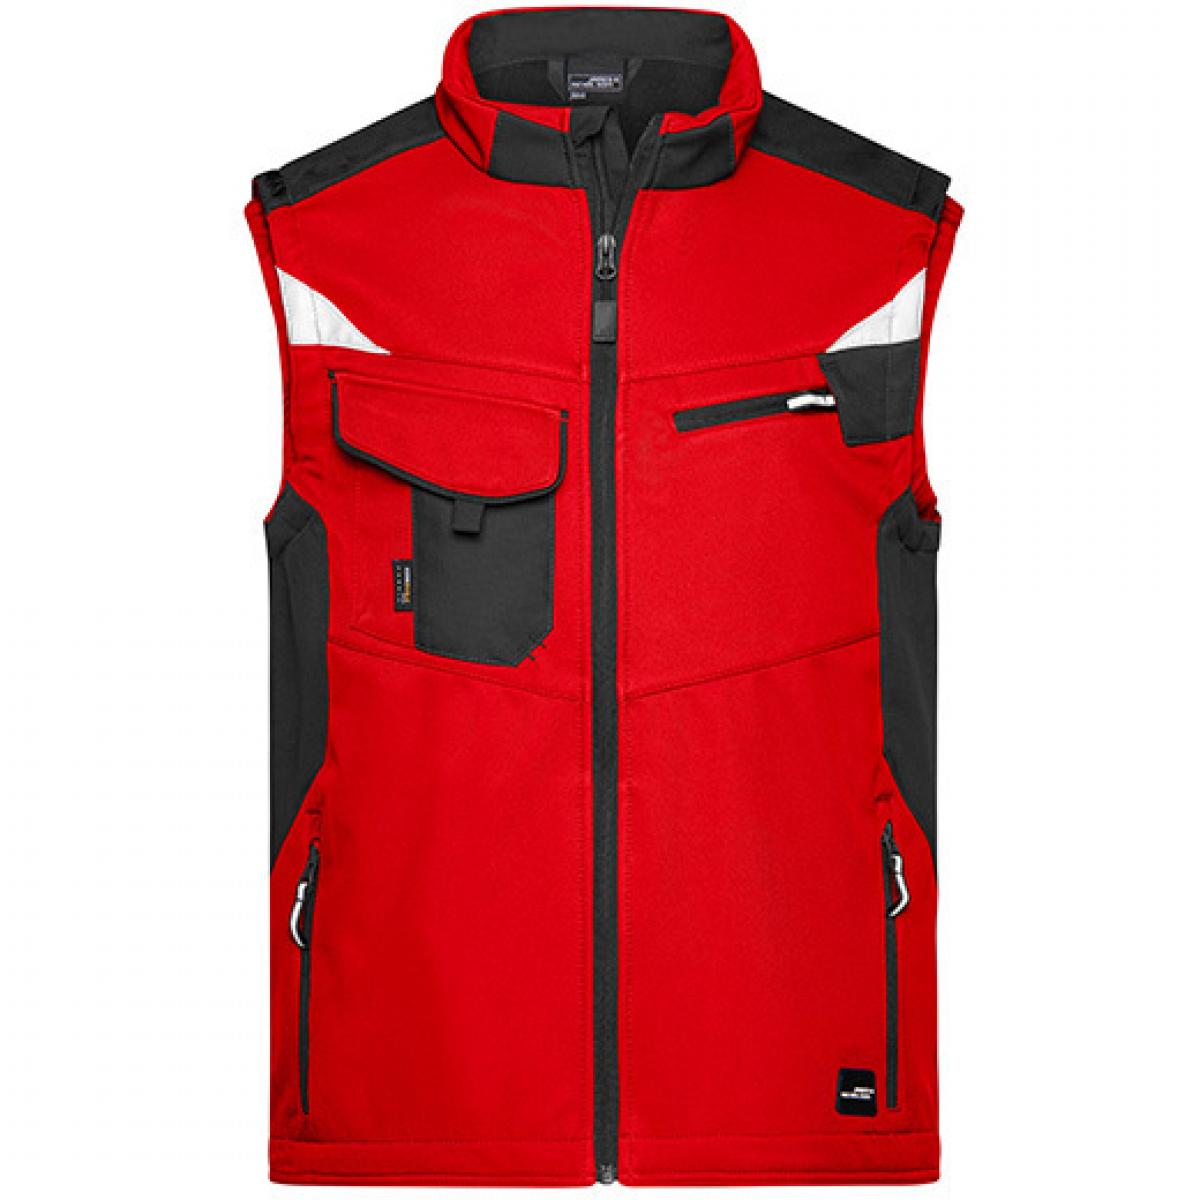 Hersteller: James+Nicholson Herstellernummer: JN845 Artikelbezeichnung: Herren Jacke, Workwear Softshell Vest -STRONG- Farbe: Red/Black